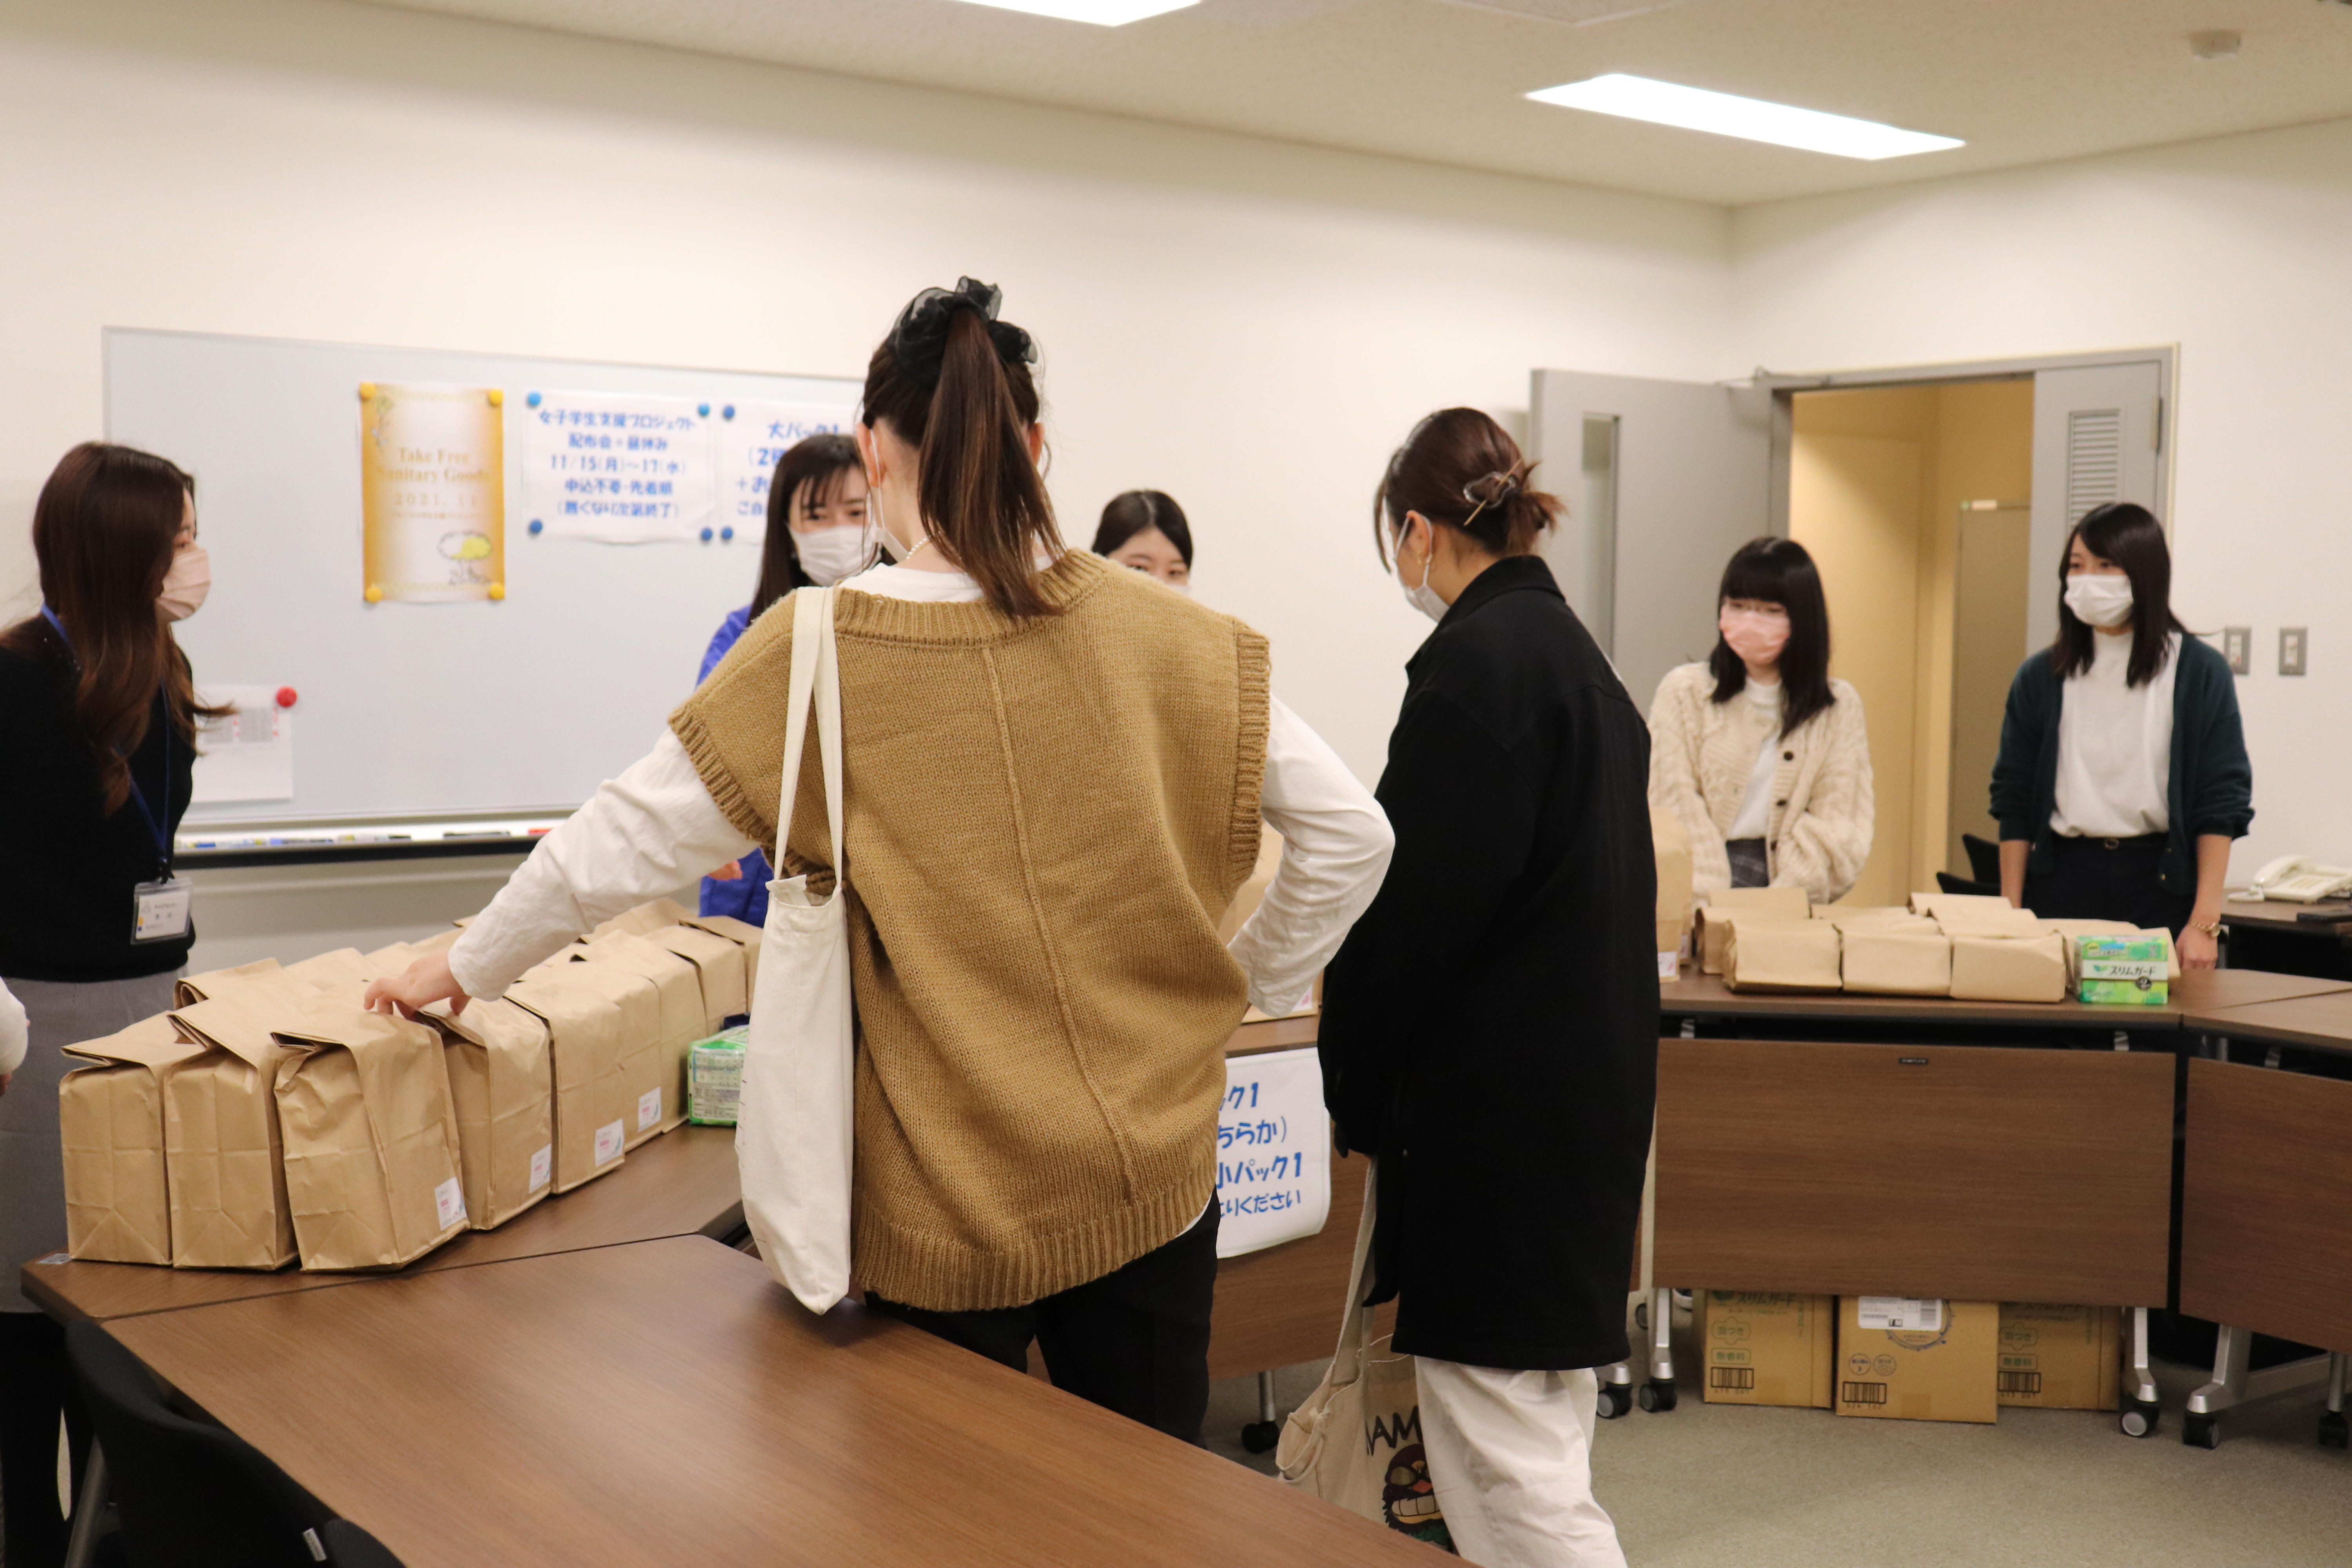 生理の貧困解消に向け教職員等のカンパによる生理用品配付を実施 -- 東京経済大学